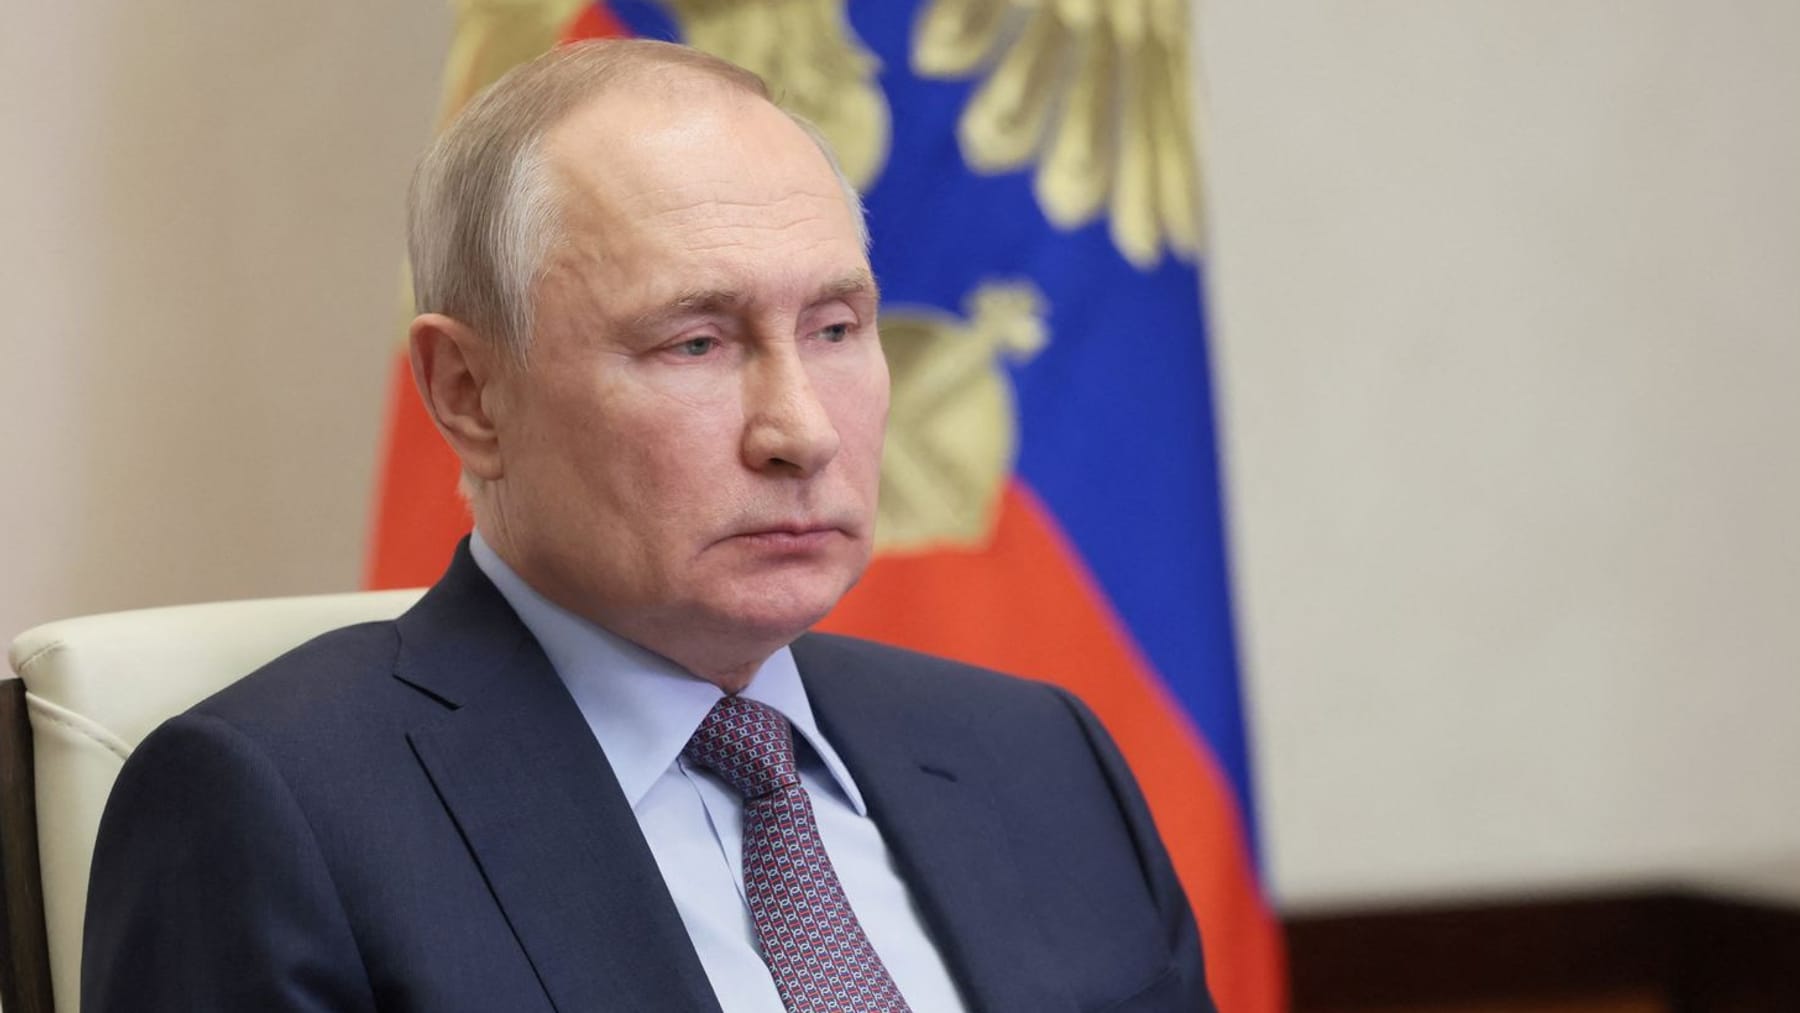 Russische zakenmensen roddelen over Poetin